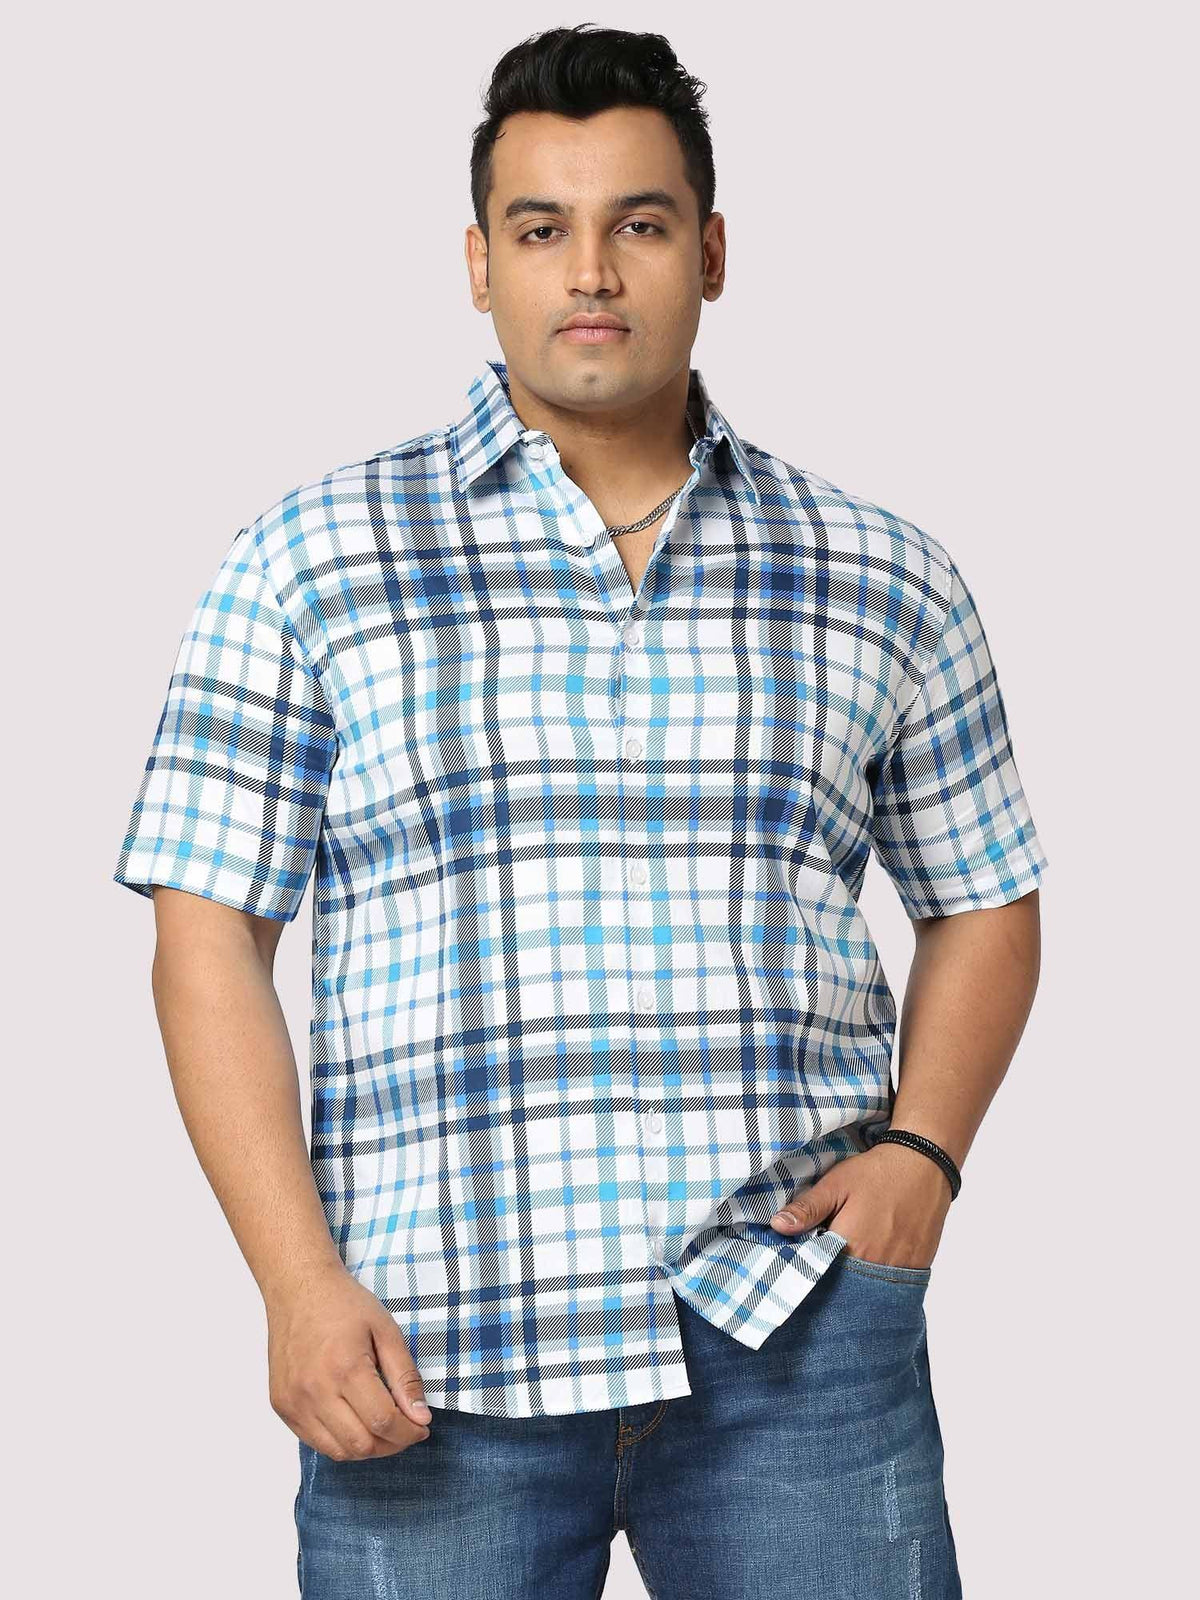 Oceanic Checks Digital Printed Half Shirt Men's Plus Size - Guniaa Fashions